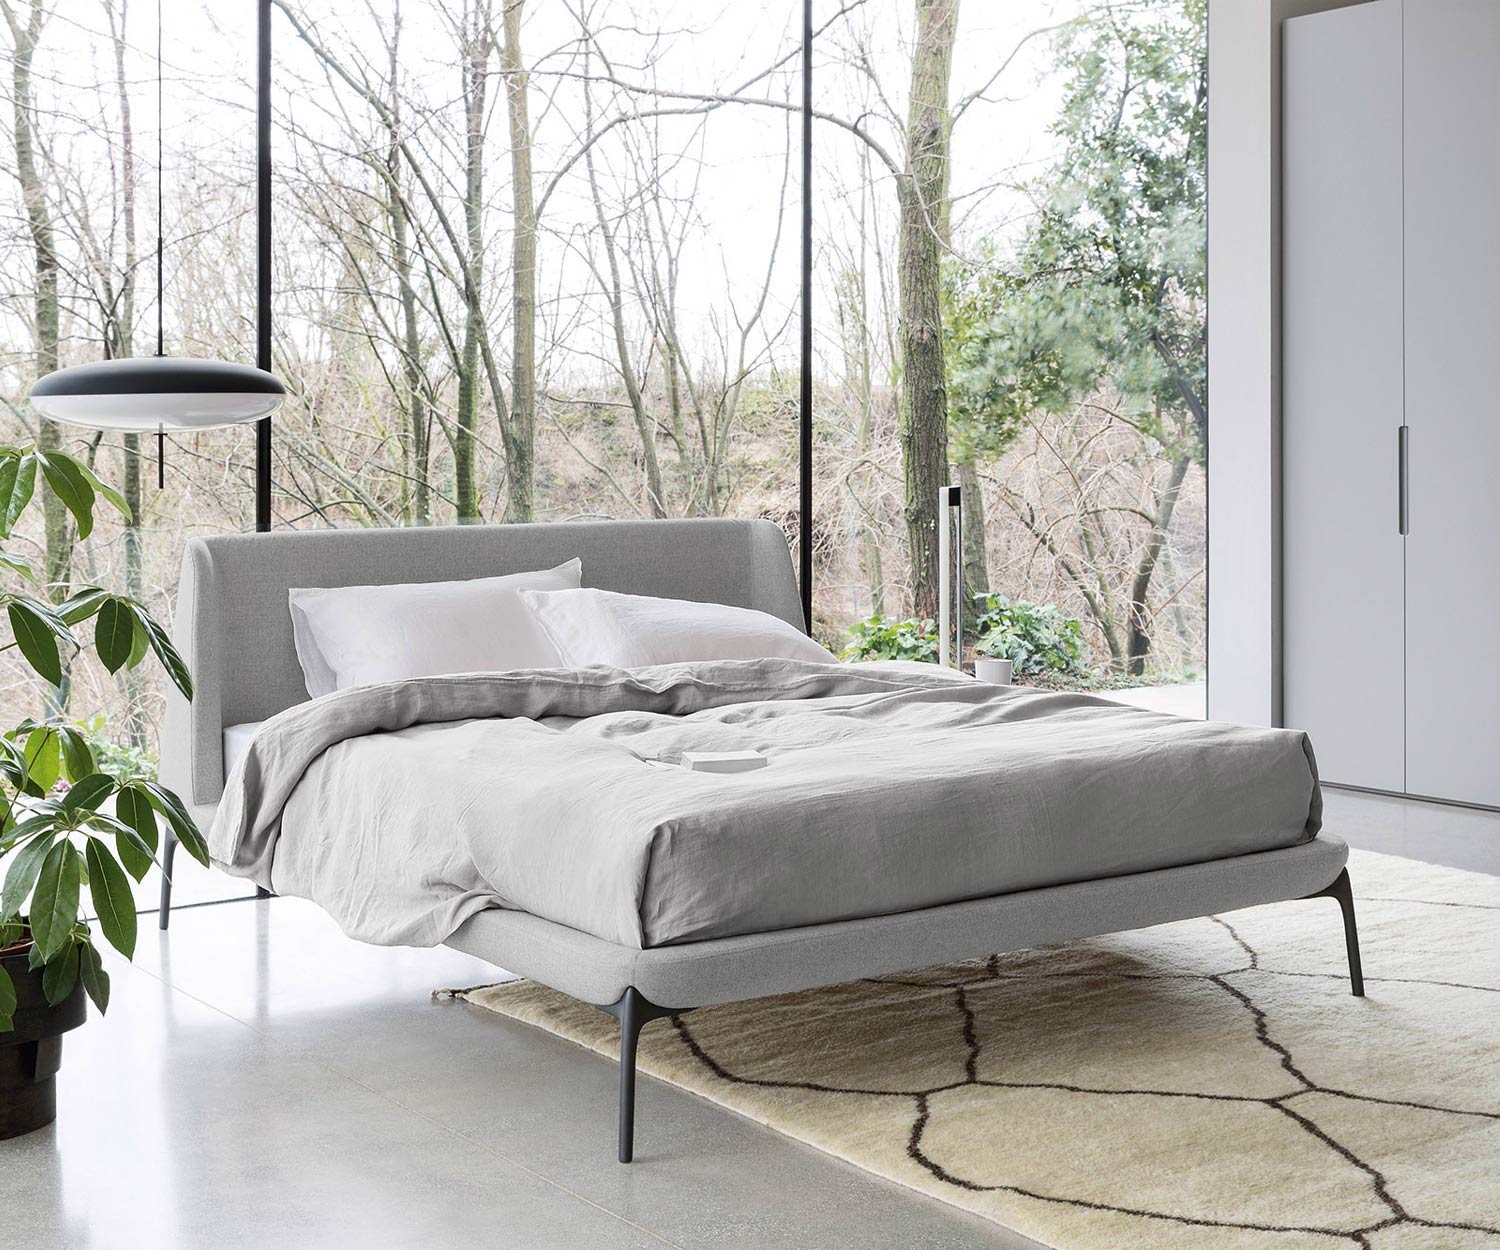 Novamobili Bed met fluwelen bekleding in de slaapkamer bekleding van grijze stof gepolijste poten